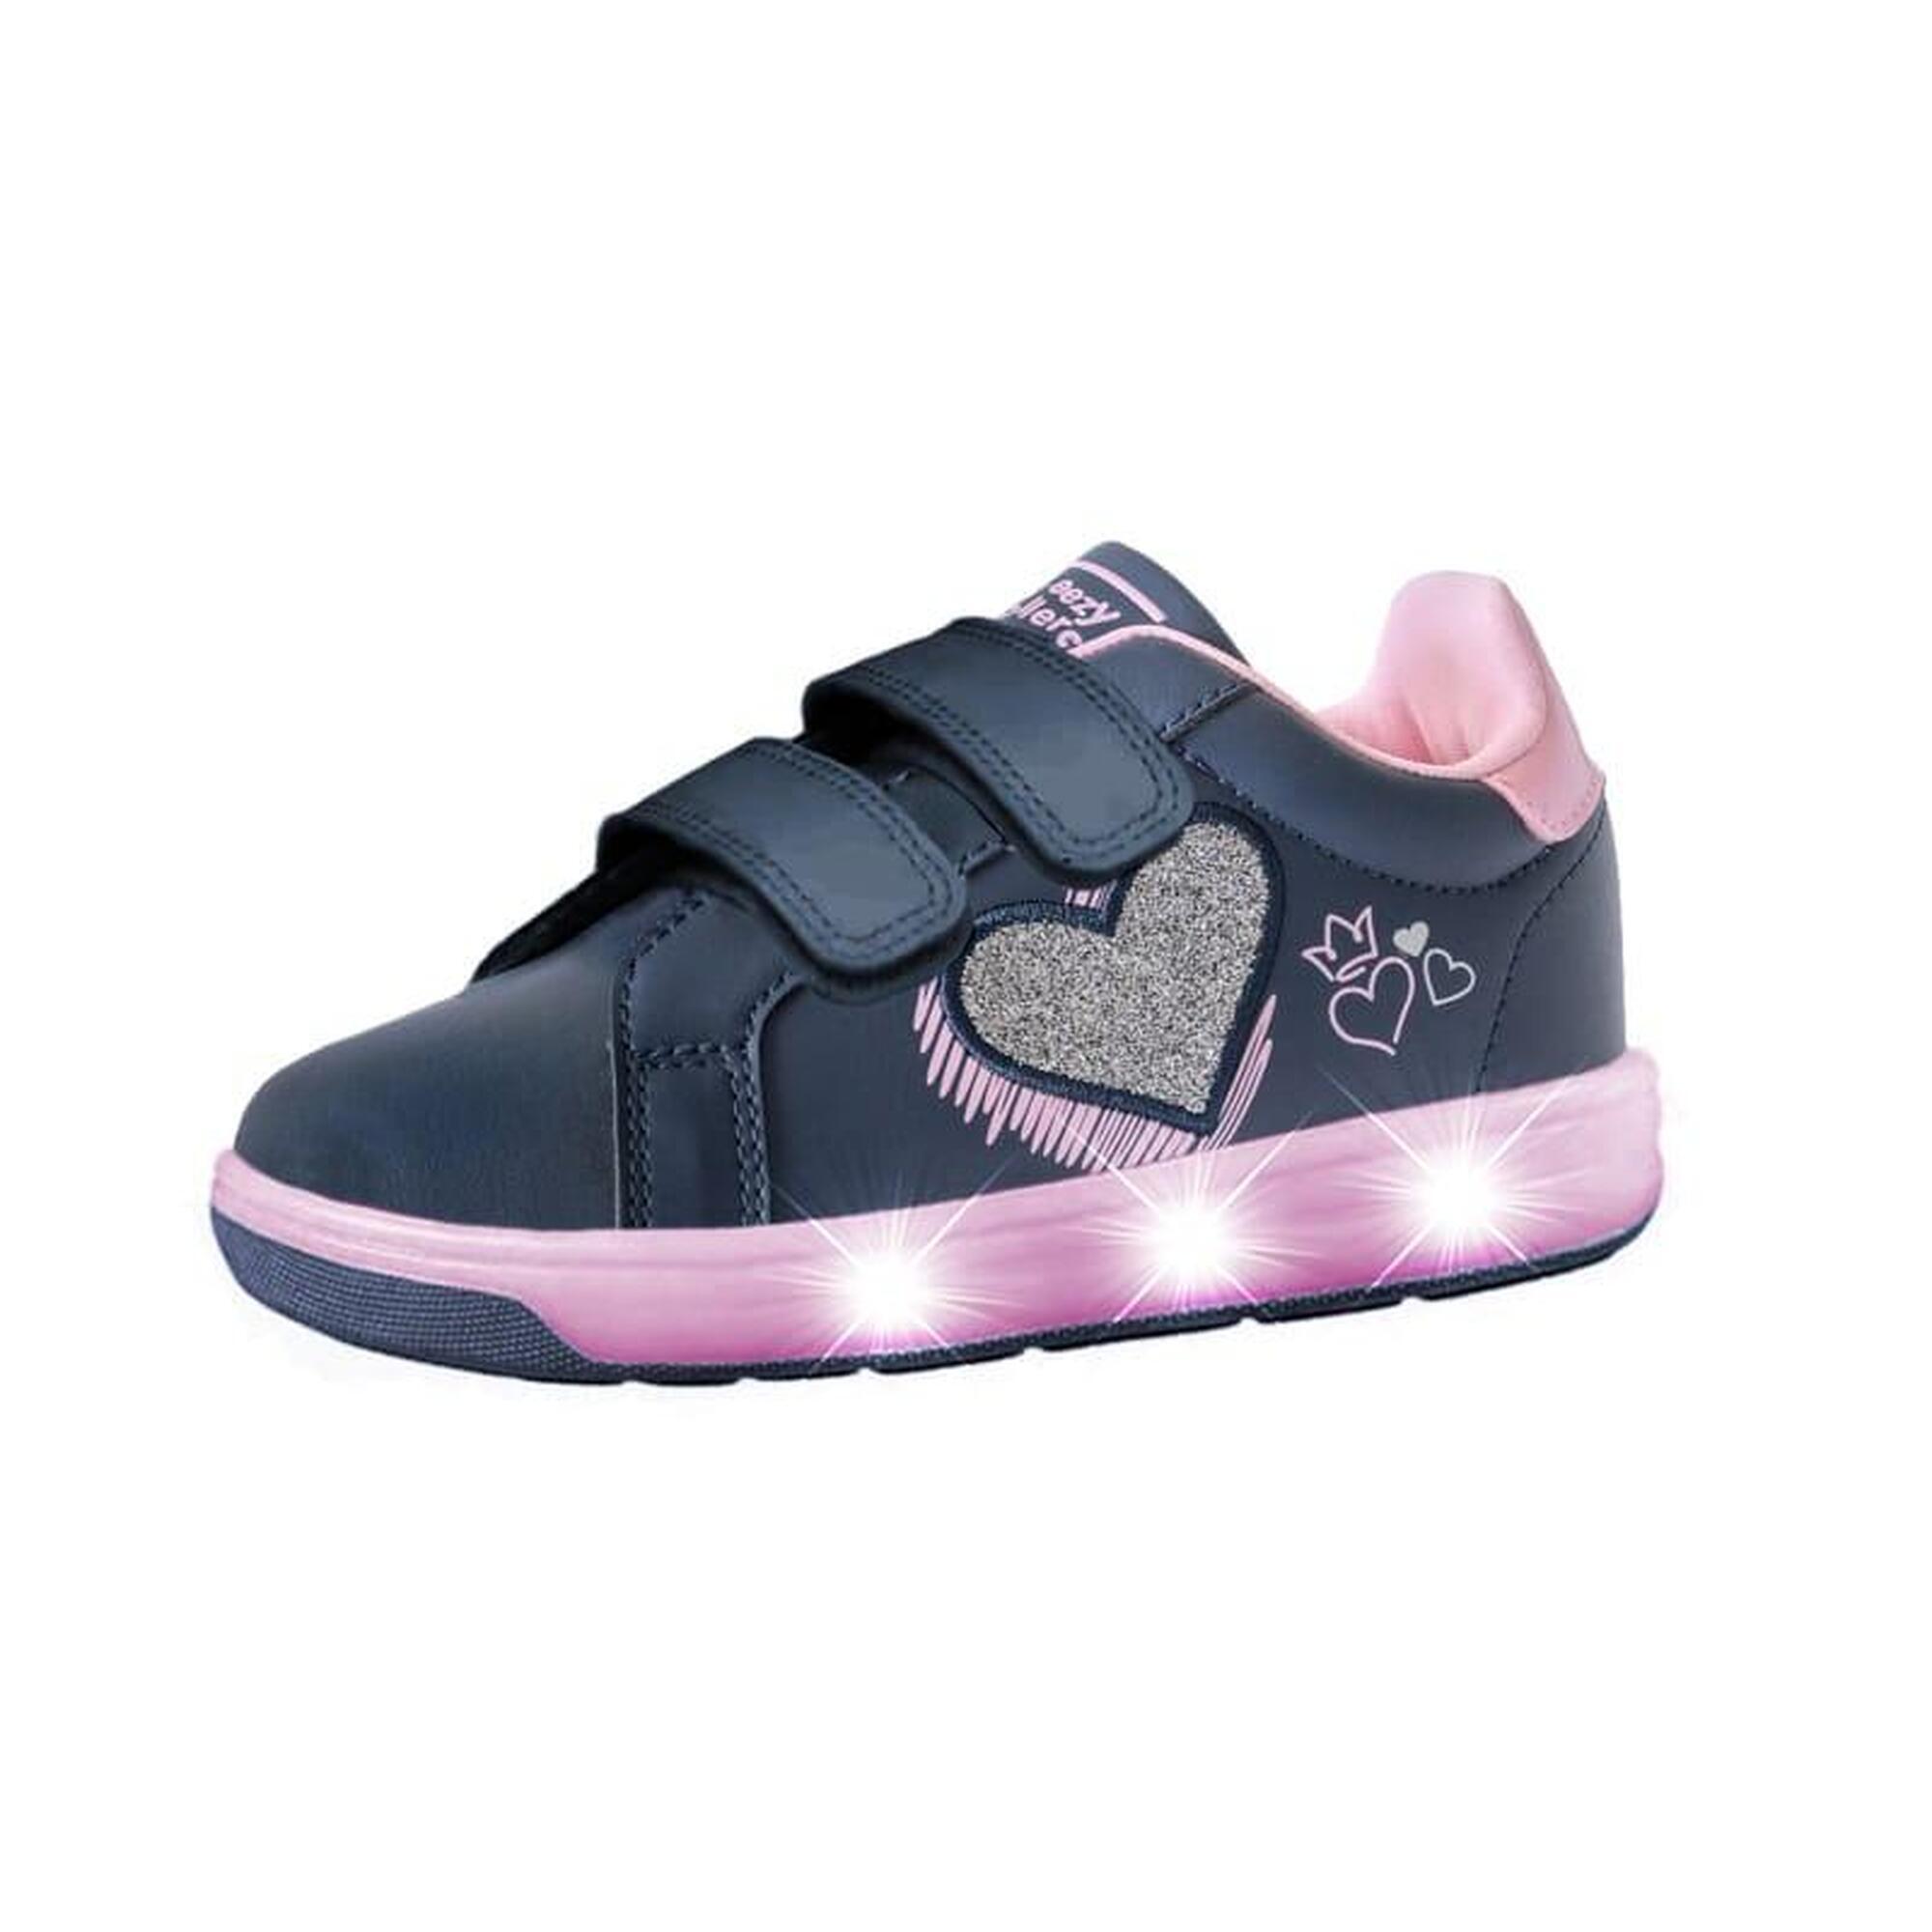 Schoenen met LED BREEZY ROLLERS 2196111 meisje paars